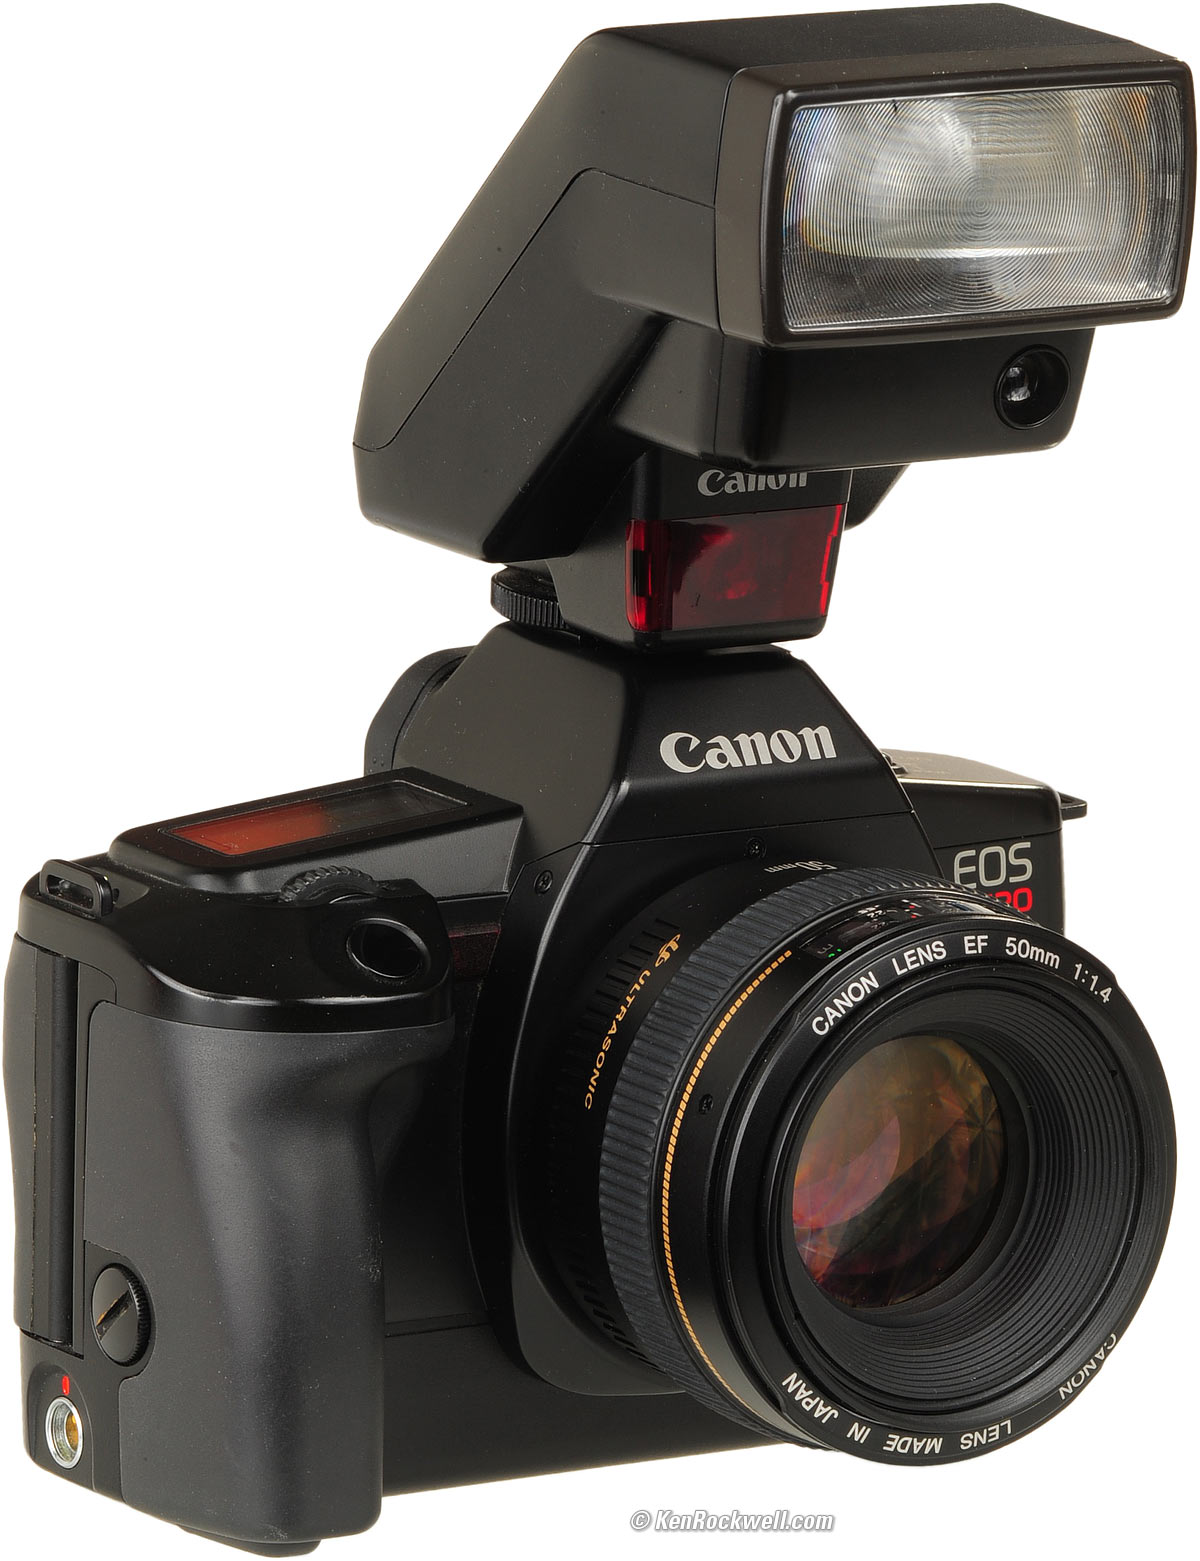 Canon EOS 650 - Wikipedia